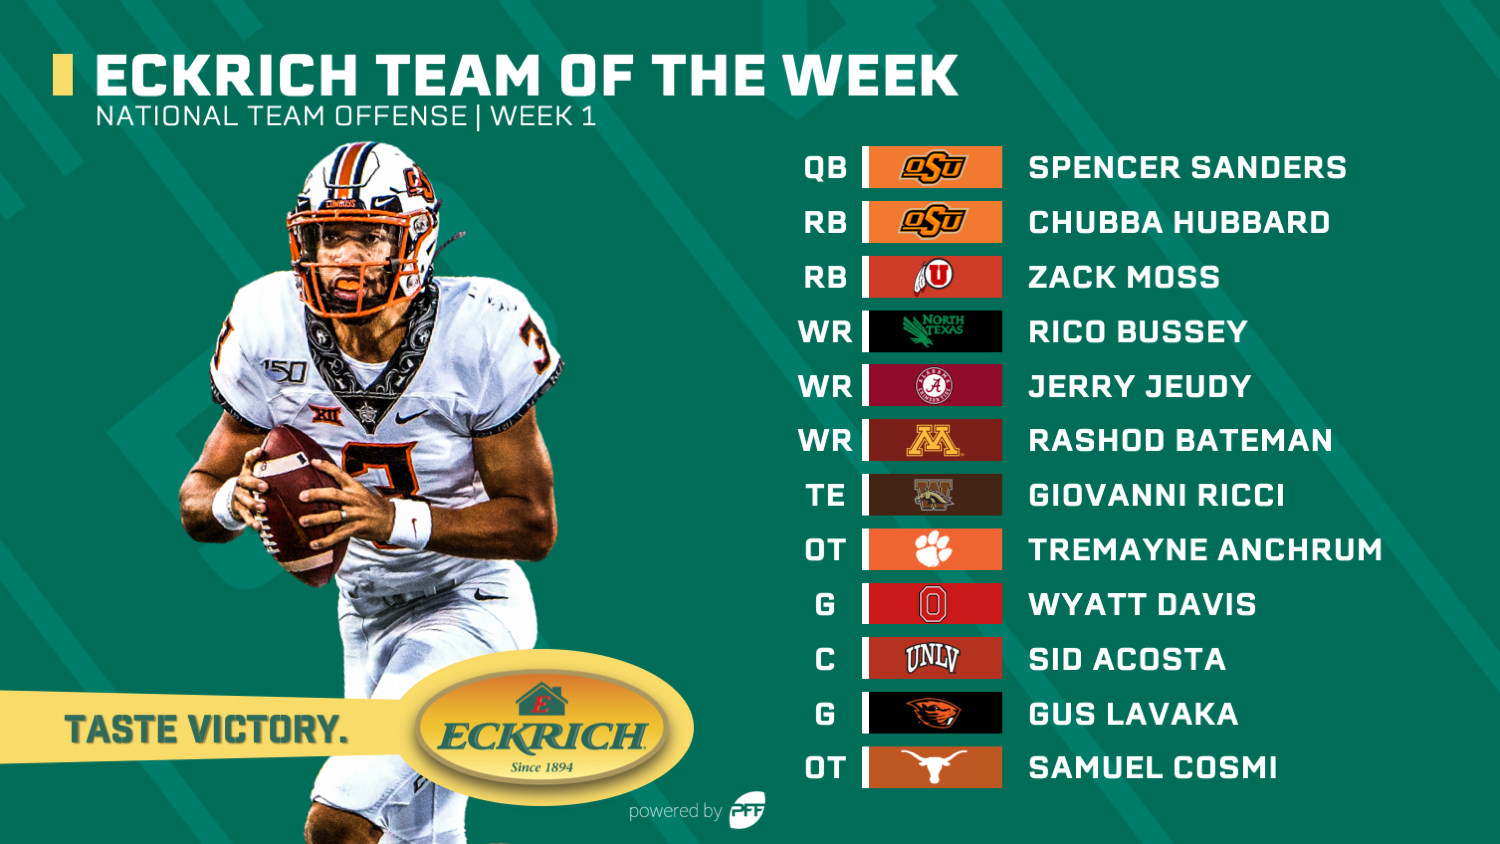 College Football Week 1 Eckrich Team of the Week, NFL Draft